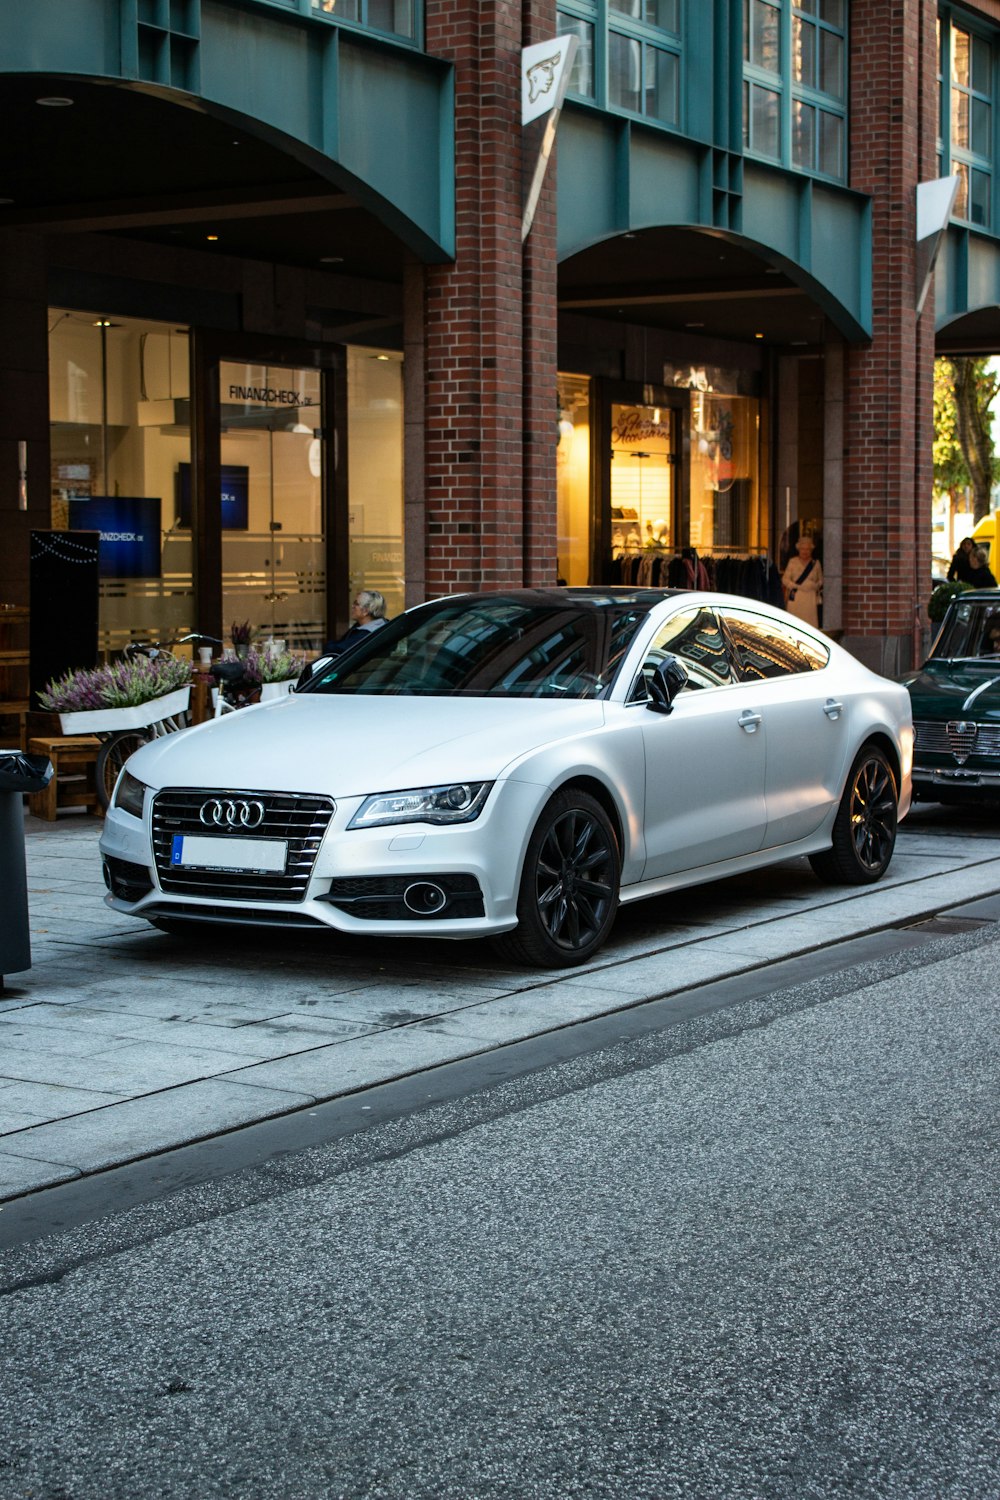 Audi sedan prata estacionado na rua ao lado da restauração